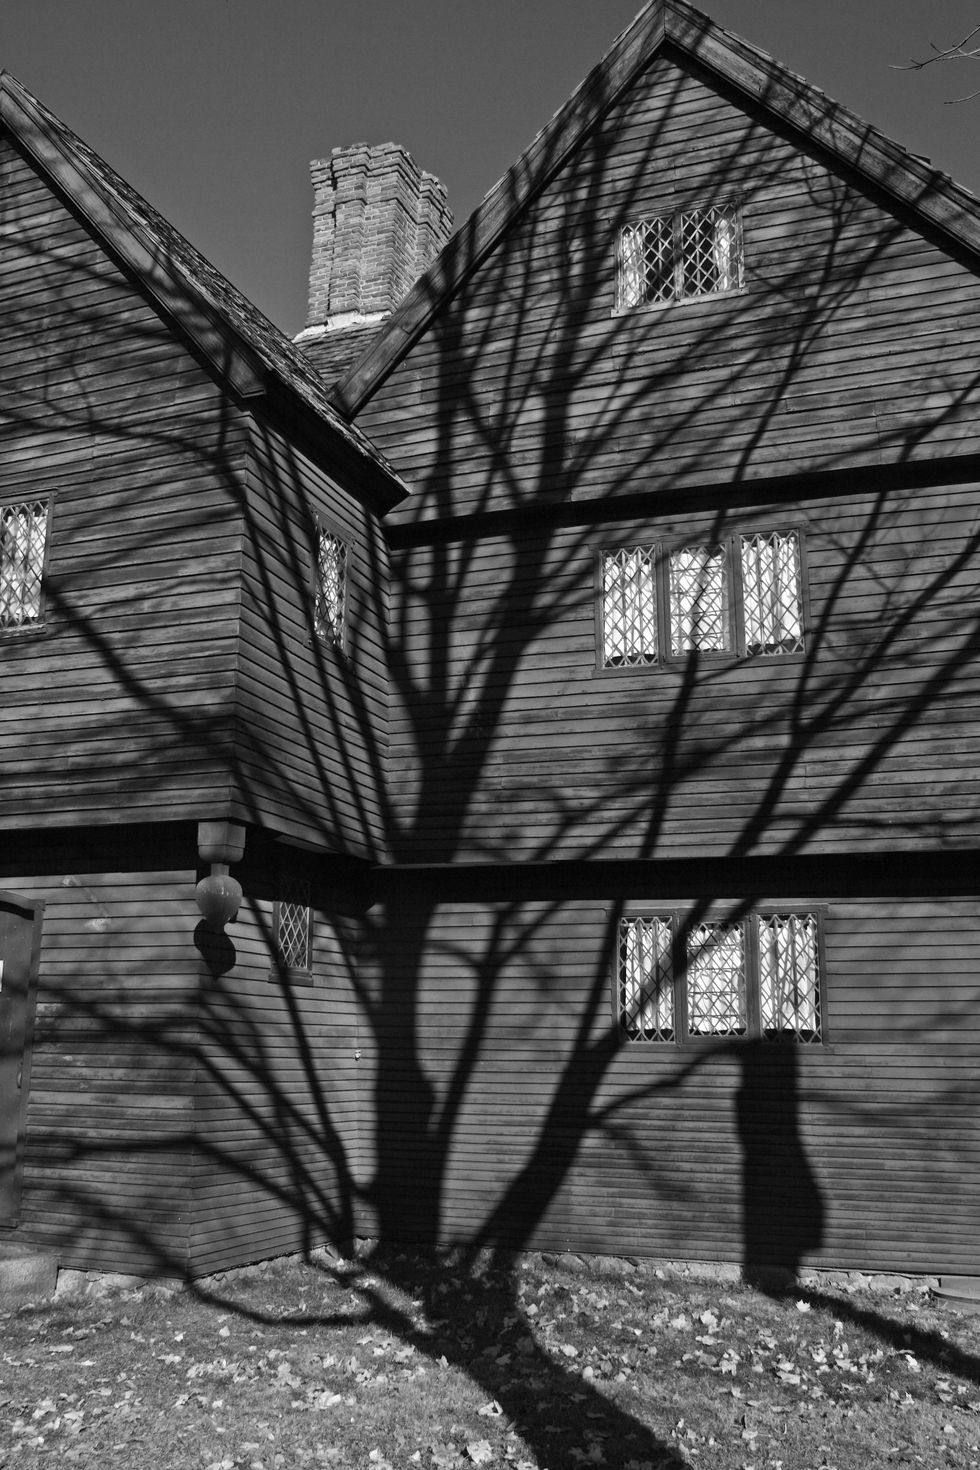 Volgens velen spookt het in het huis van Jonathan Corwin in Salem Massachusetts De rechter die in 1692 de beruchte heksenprocessen in het stadje leidde veroordeelde meerdere mensen wegens hekserij ter dood De geesten van deze onterecht veroordeelden zouden nog in Corwins huis rondwaren